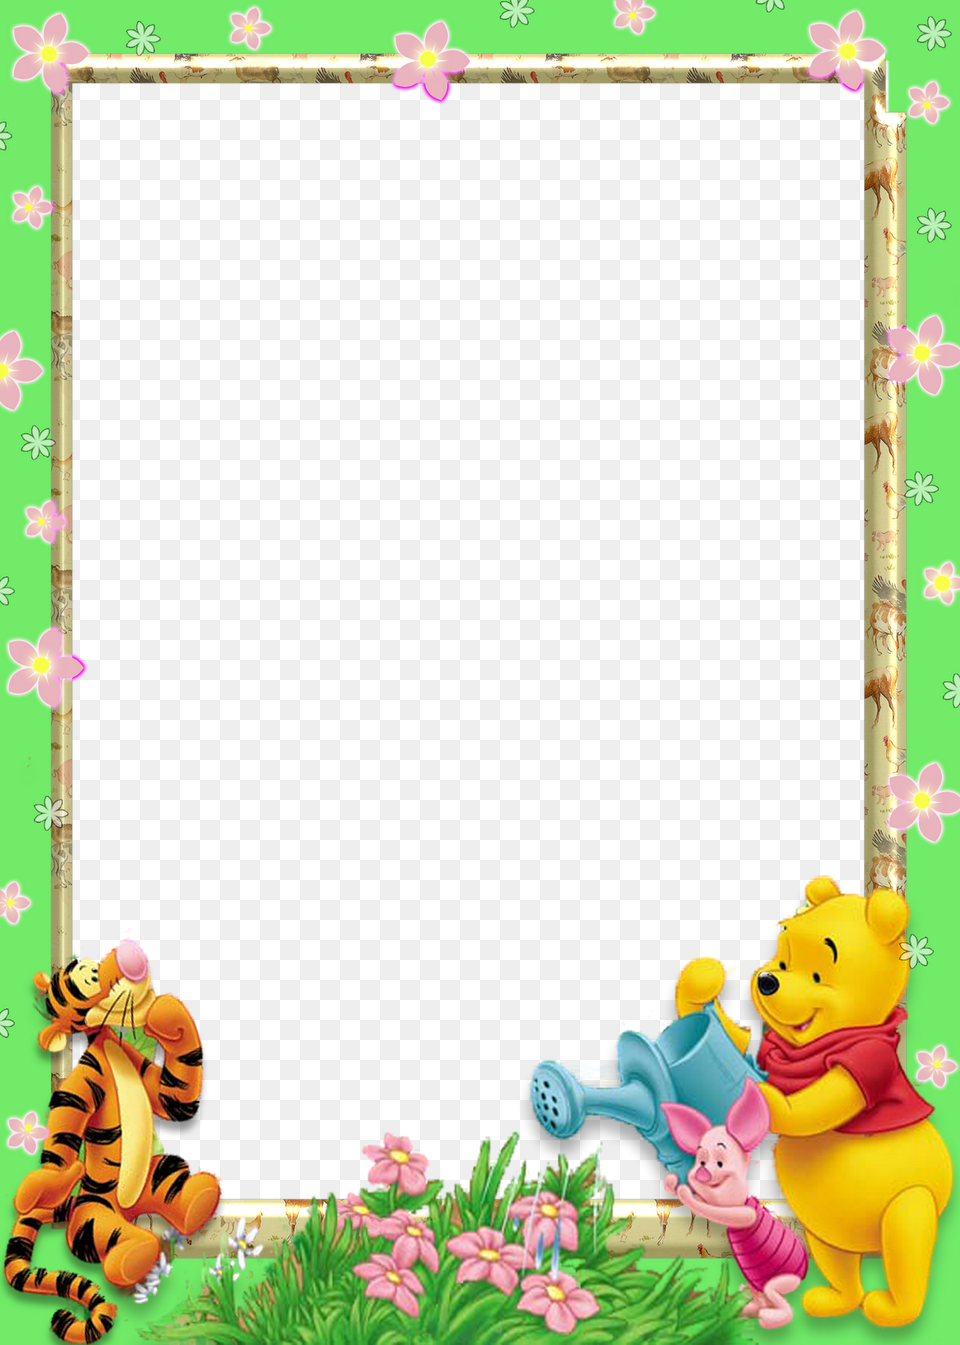 Marcos De Winnie Pooh Beb Para Fotos Marcos De Winnie Pooh, Baby, Person Free Png Download